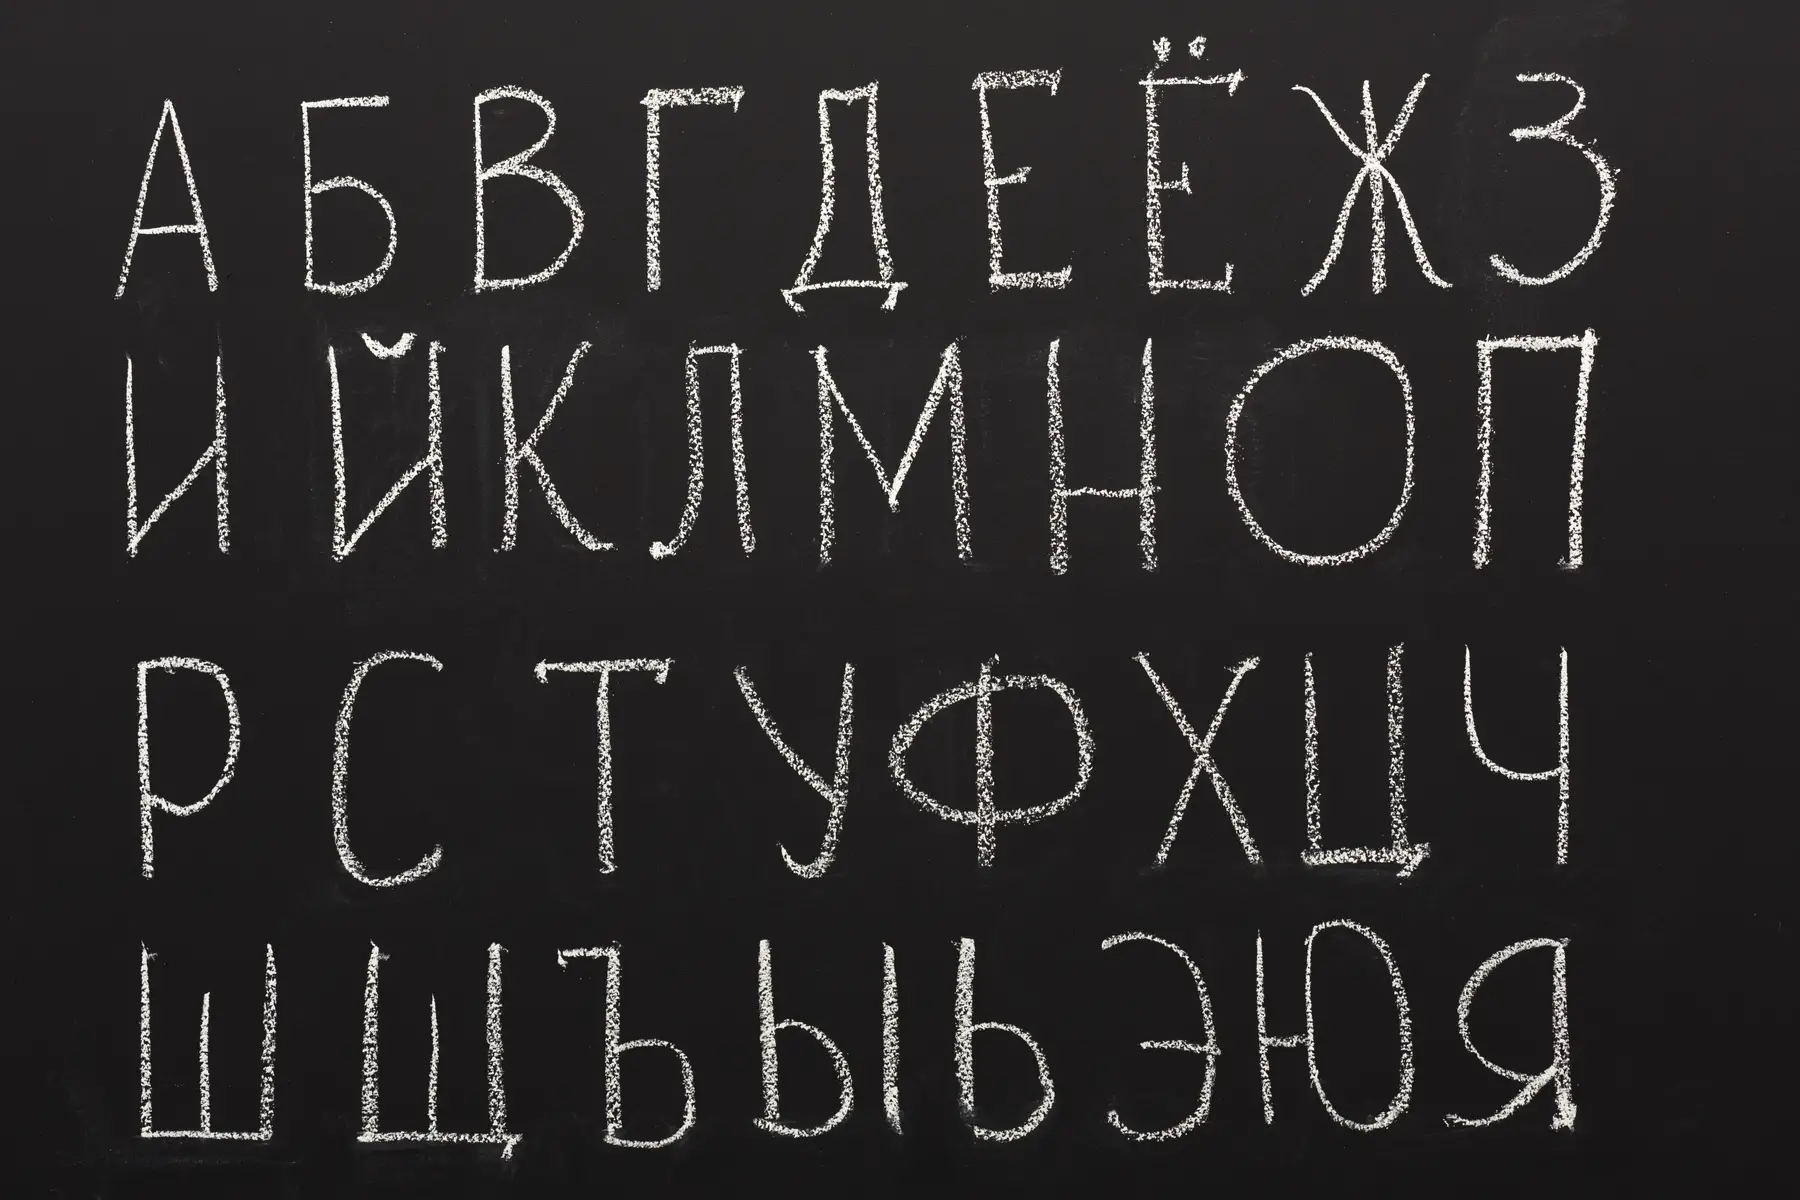 Russian Cyrilic alphabet